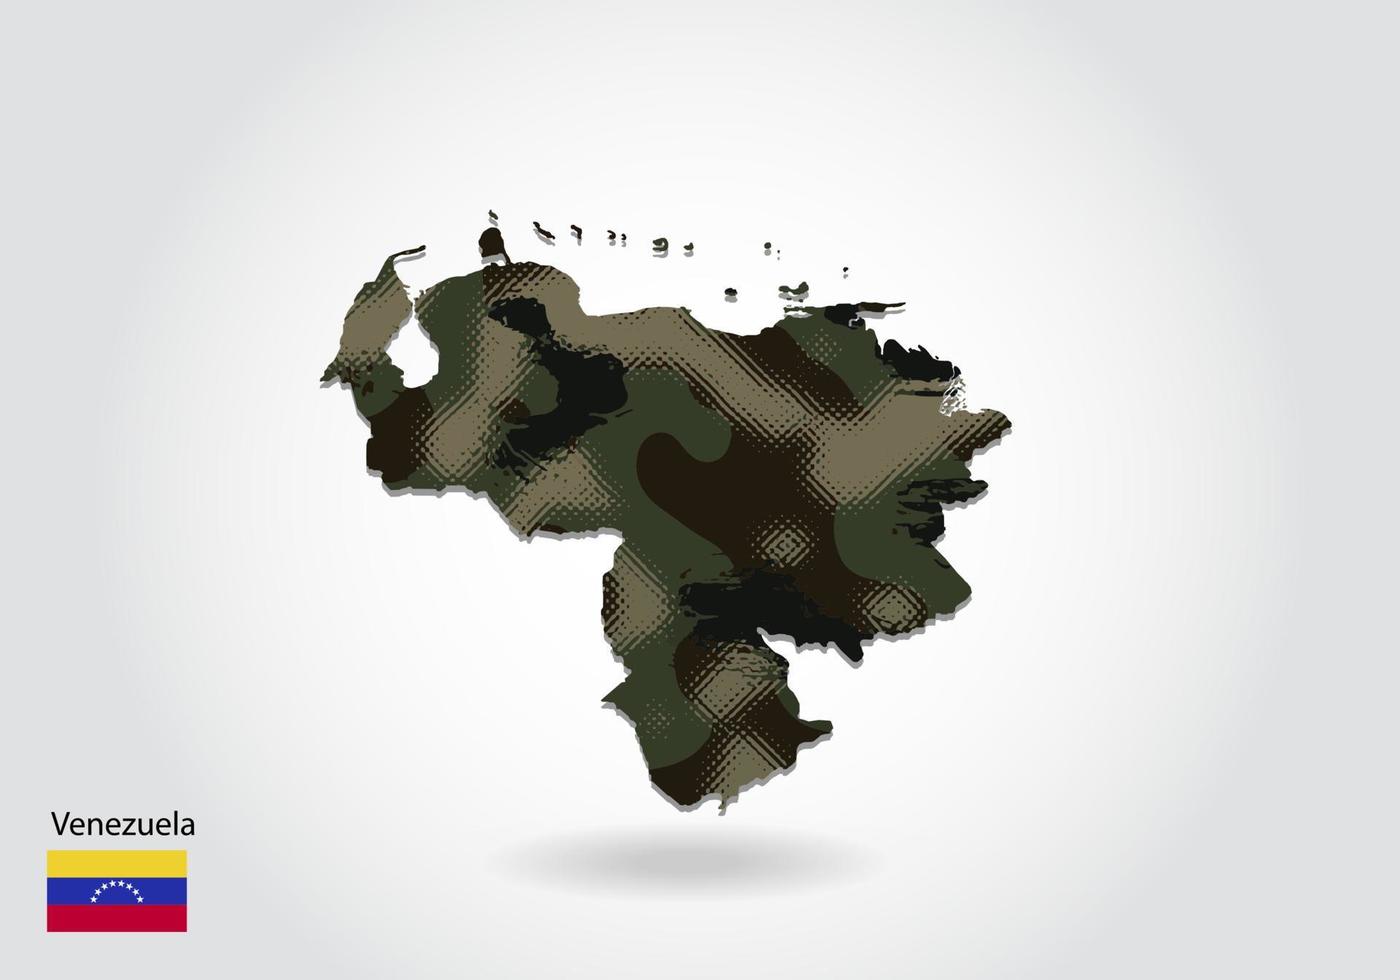 mappa venezuela con motivo mimetico, foresta - trama verde nella mappa. concetto militare per esercito, soldato e guerra. stemma, bandiera. vettore